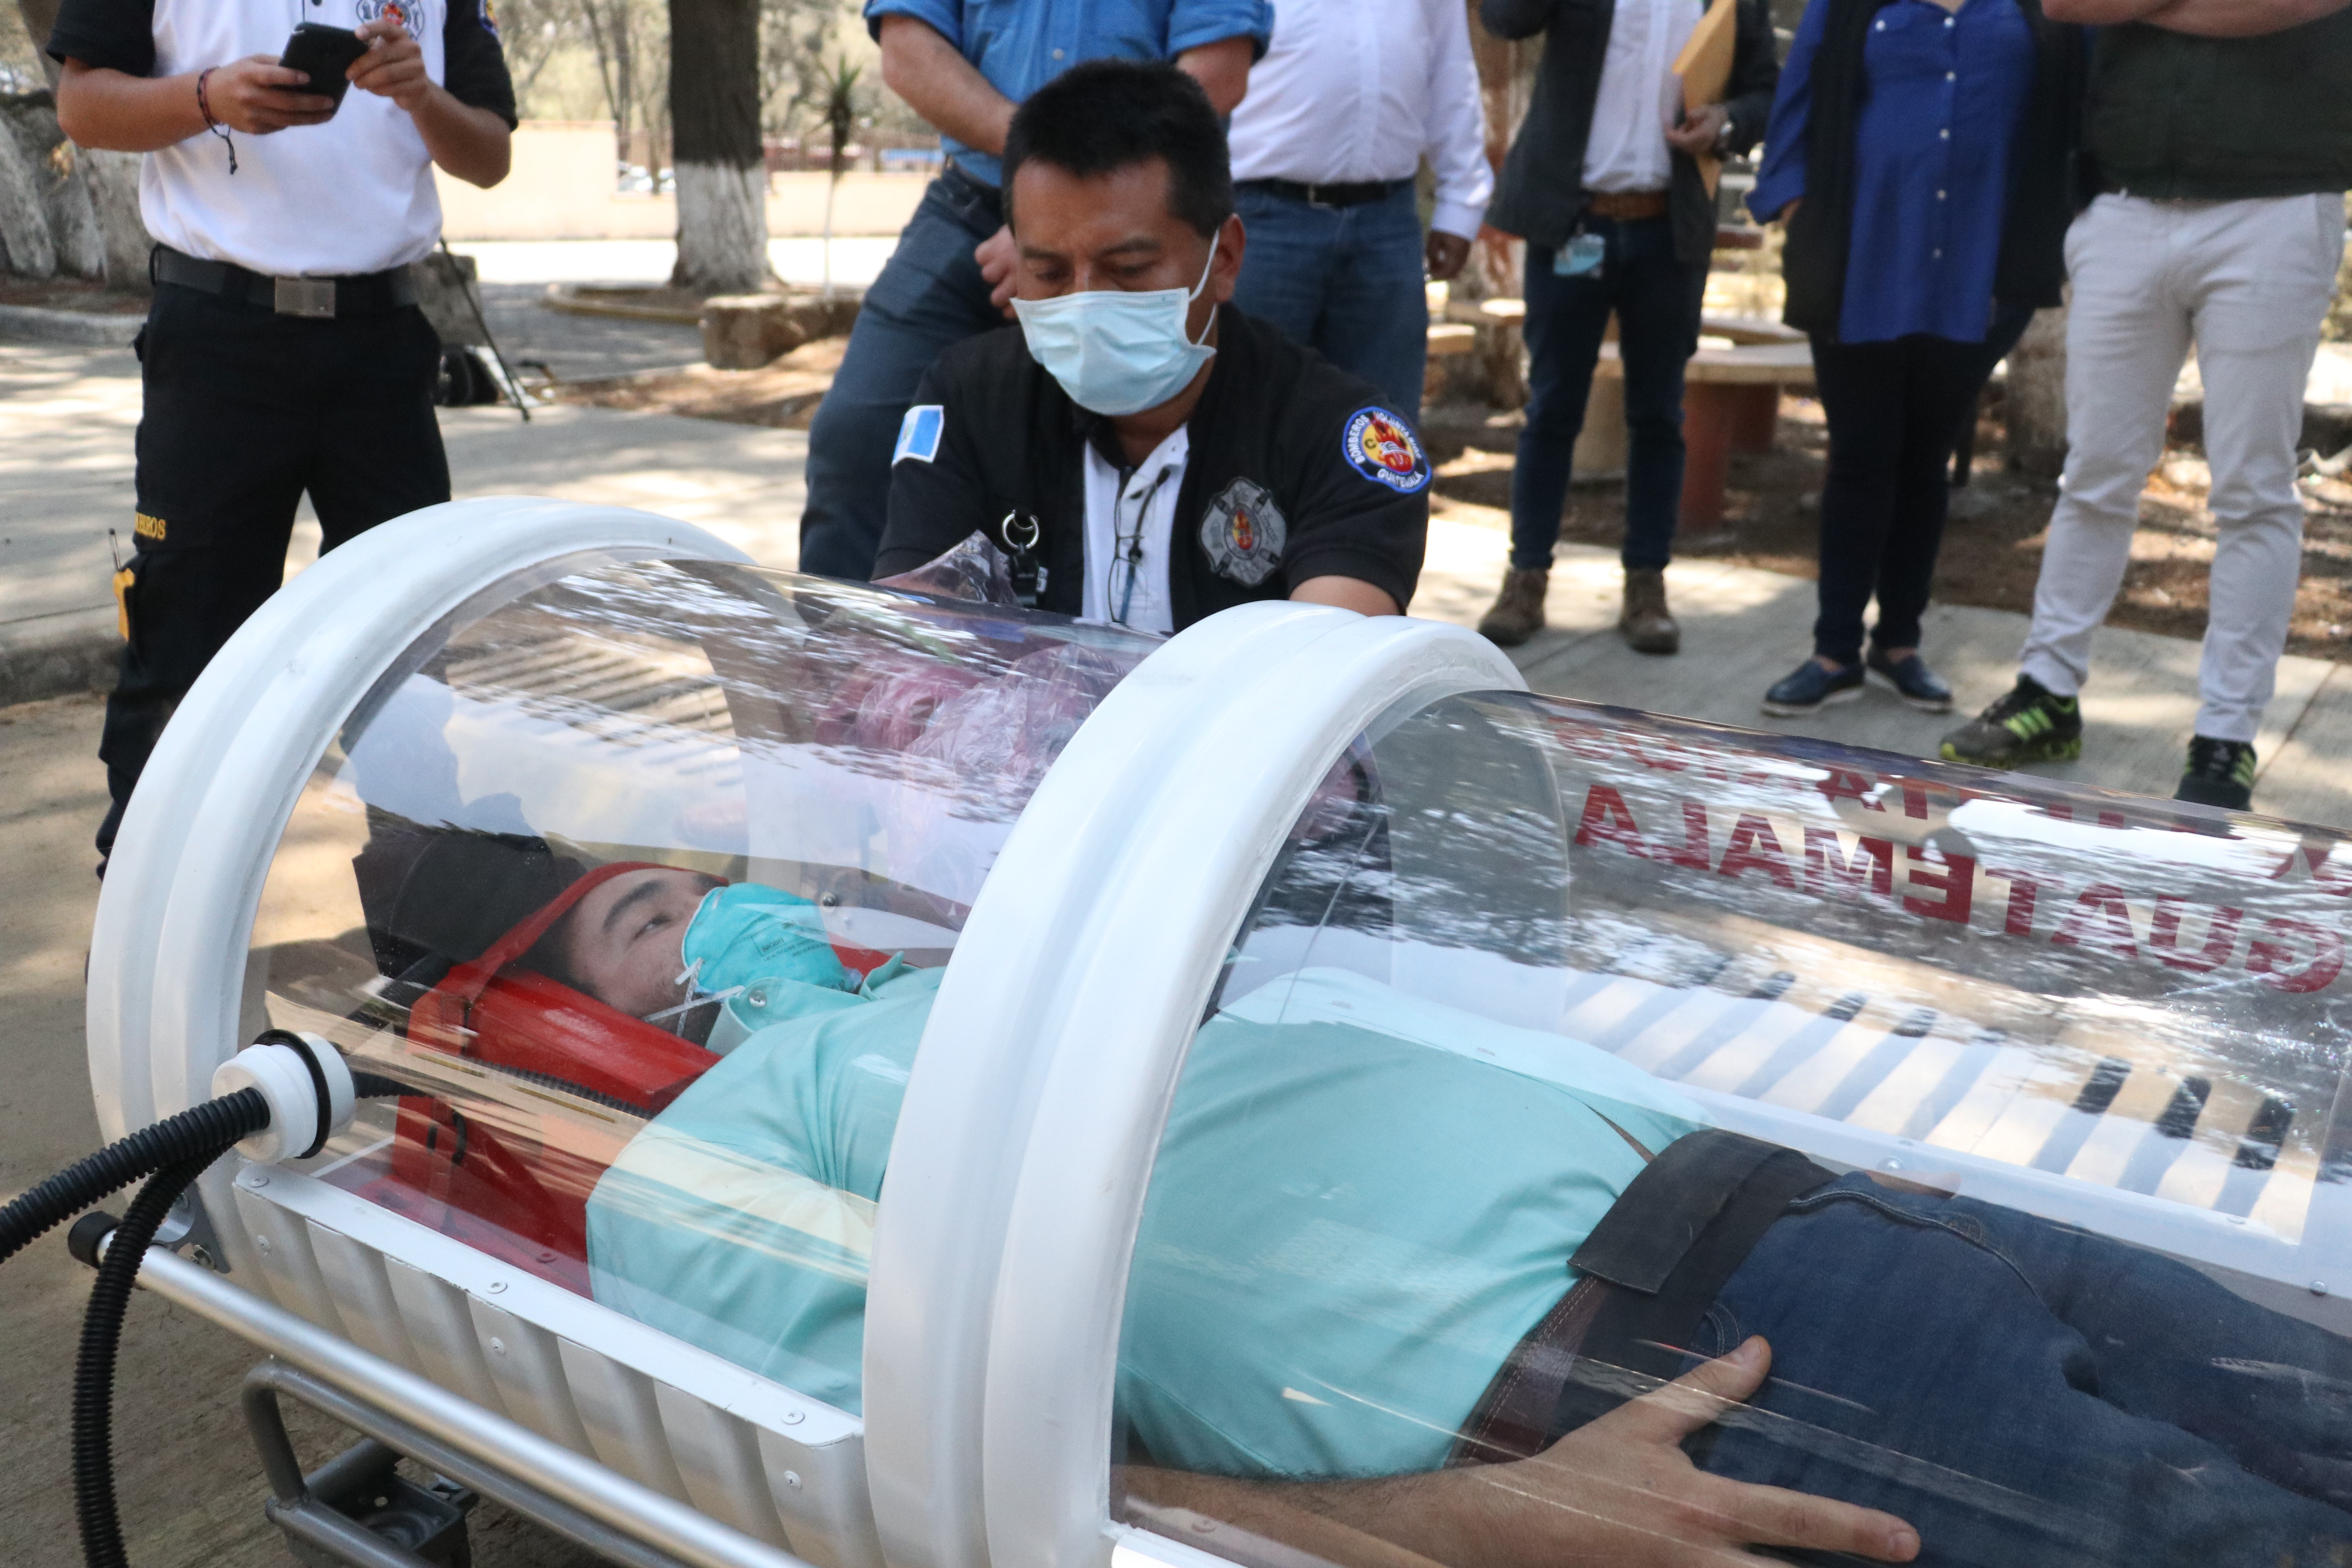 Bomberos Voluntarios de San Marcos hicieron una simulación de transportar a un paciente positivo de covid-19 para demostrar cómo funciona la cápsula. (Foto Prensa Libre: Raúl Juárez)